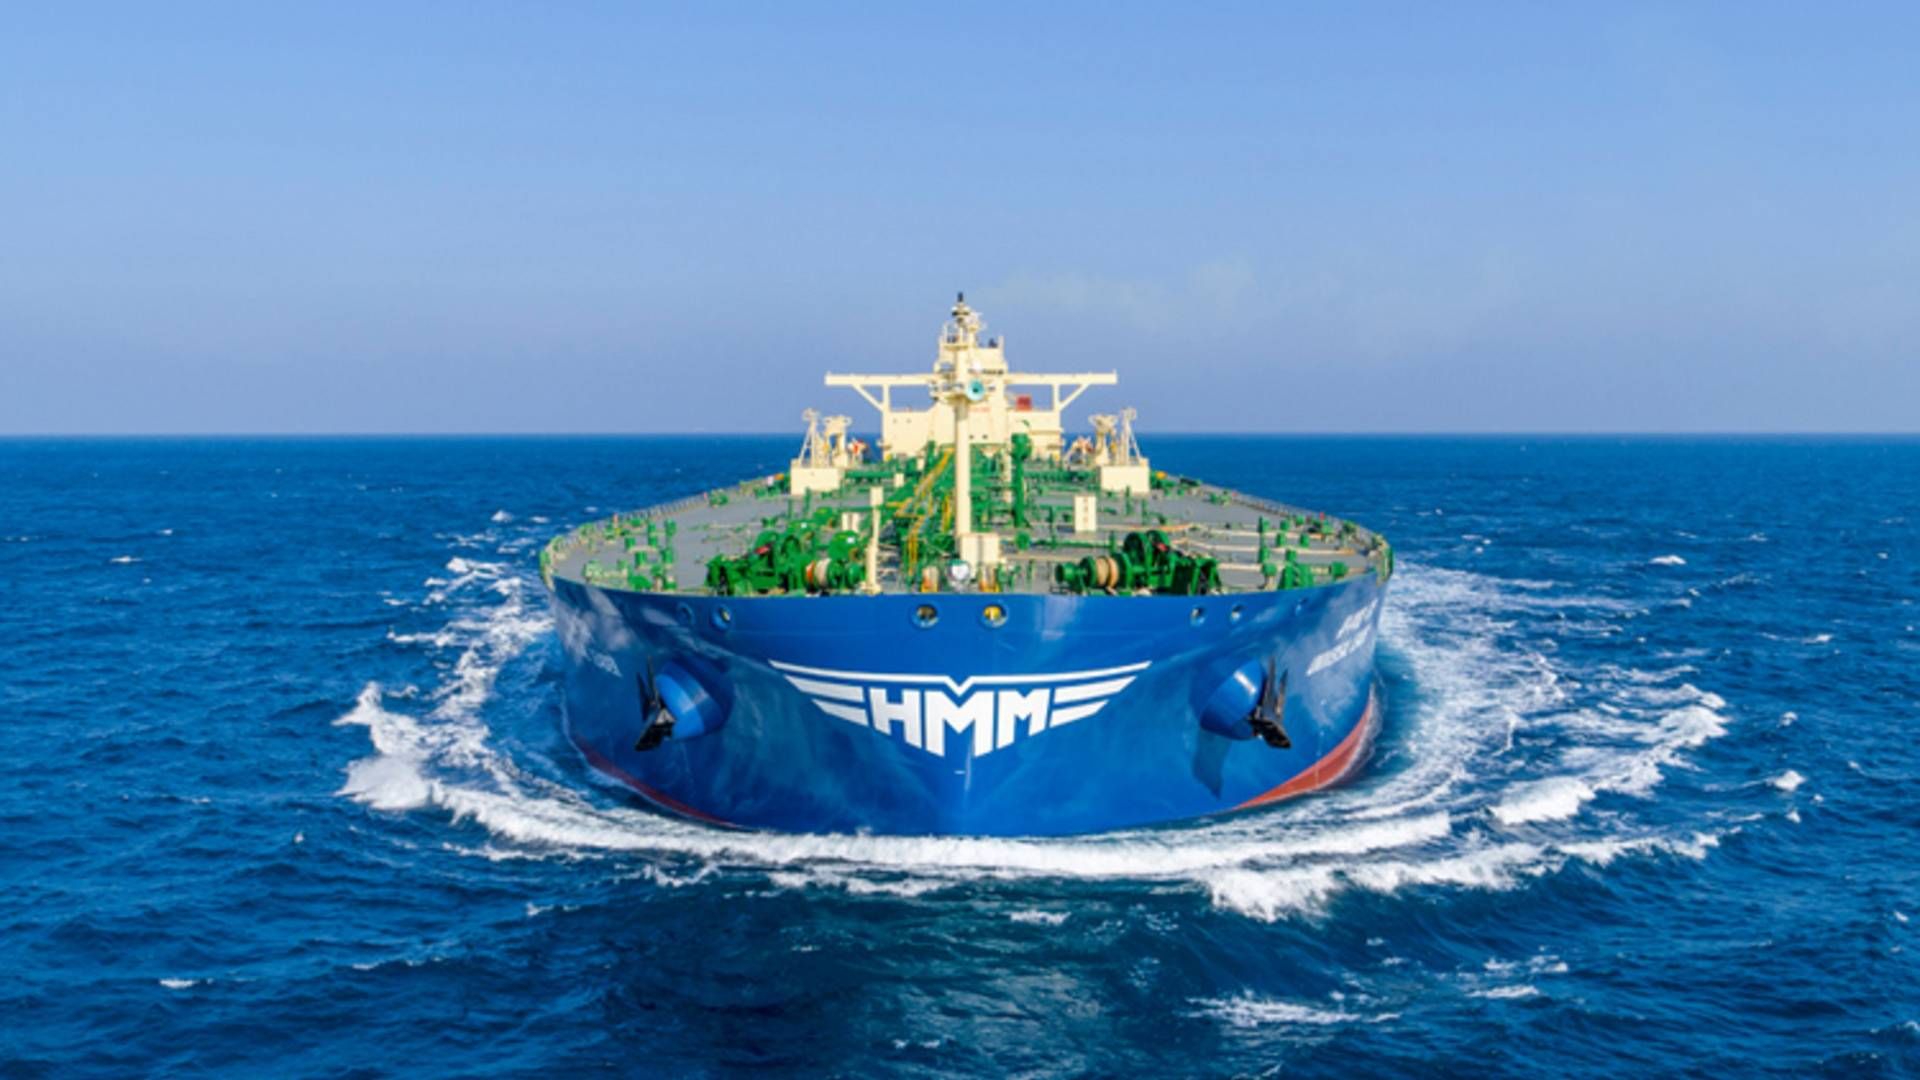 Senere i år tager HMM imod en række nye containerskibe, der hver har en kapacitet på 24.000 teu. | Foto: PR / HMM